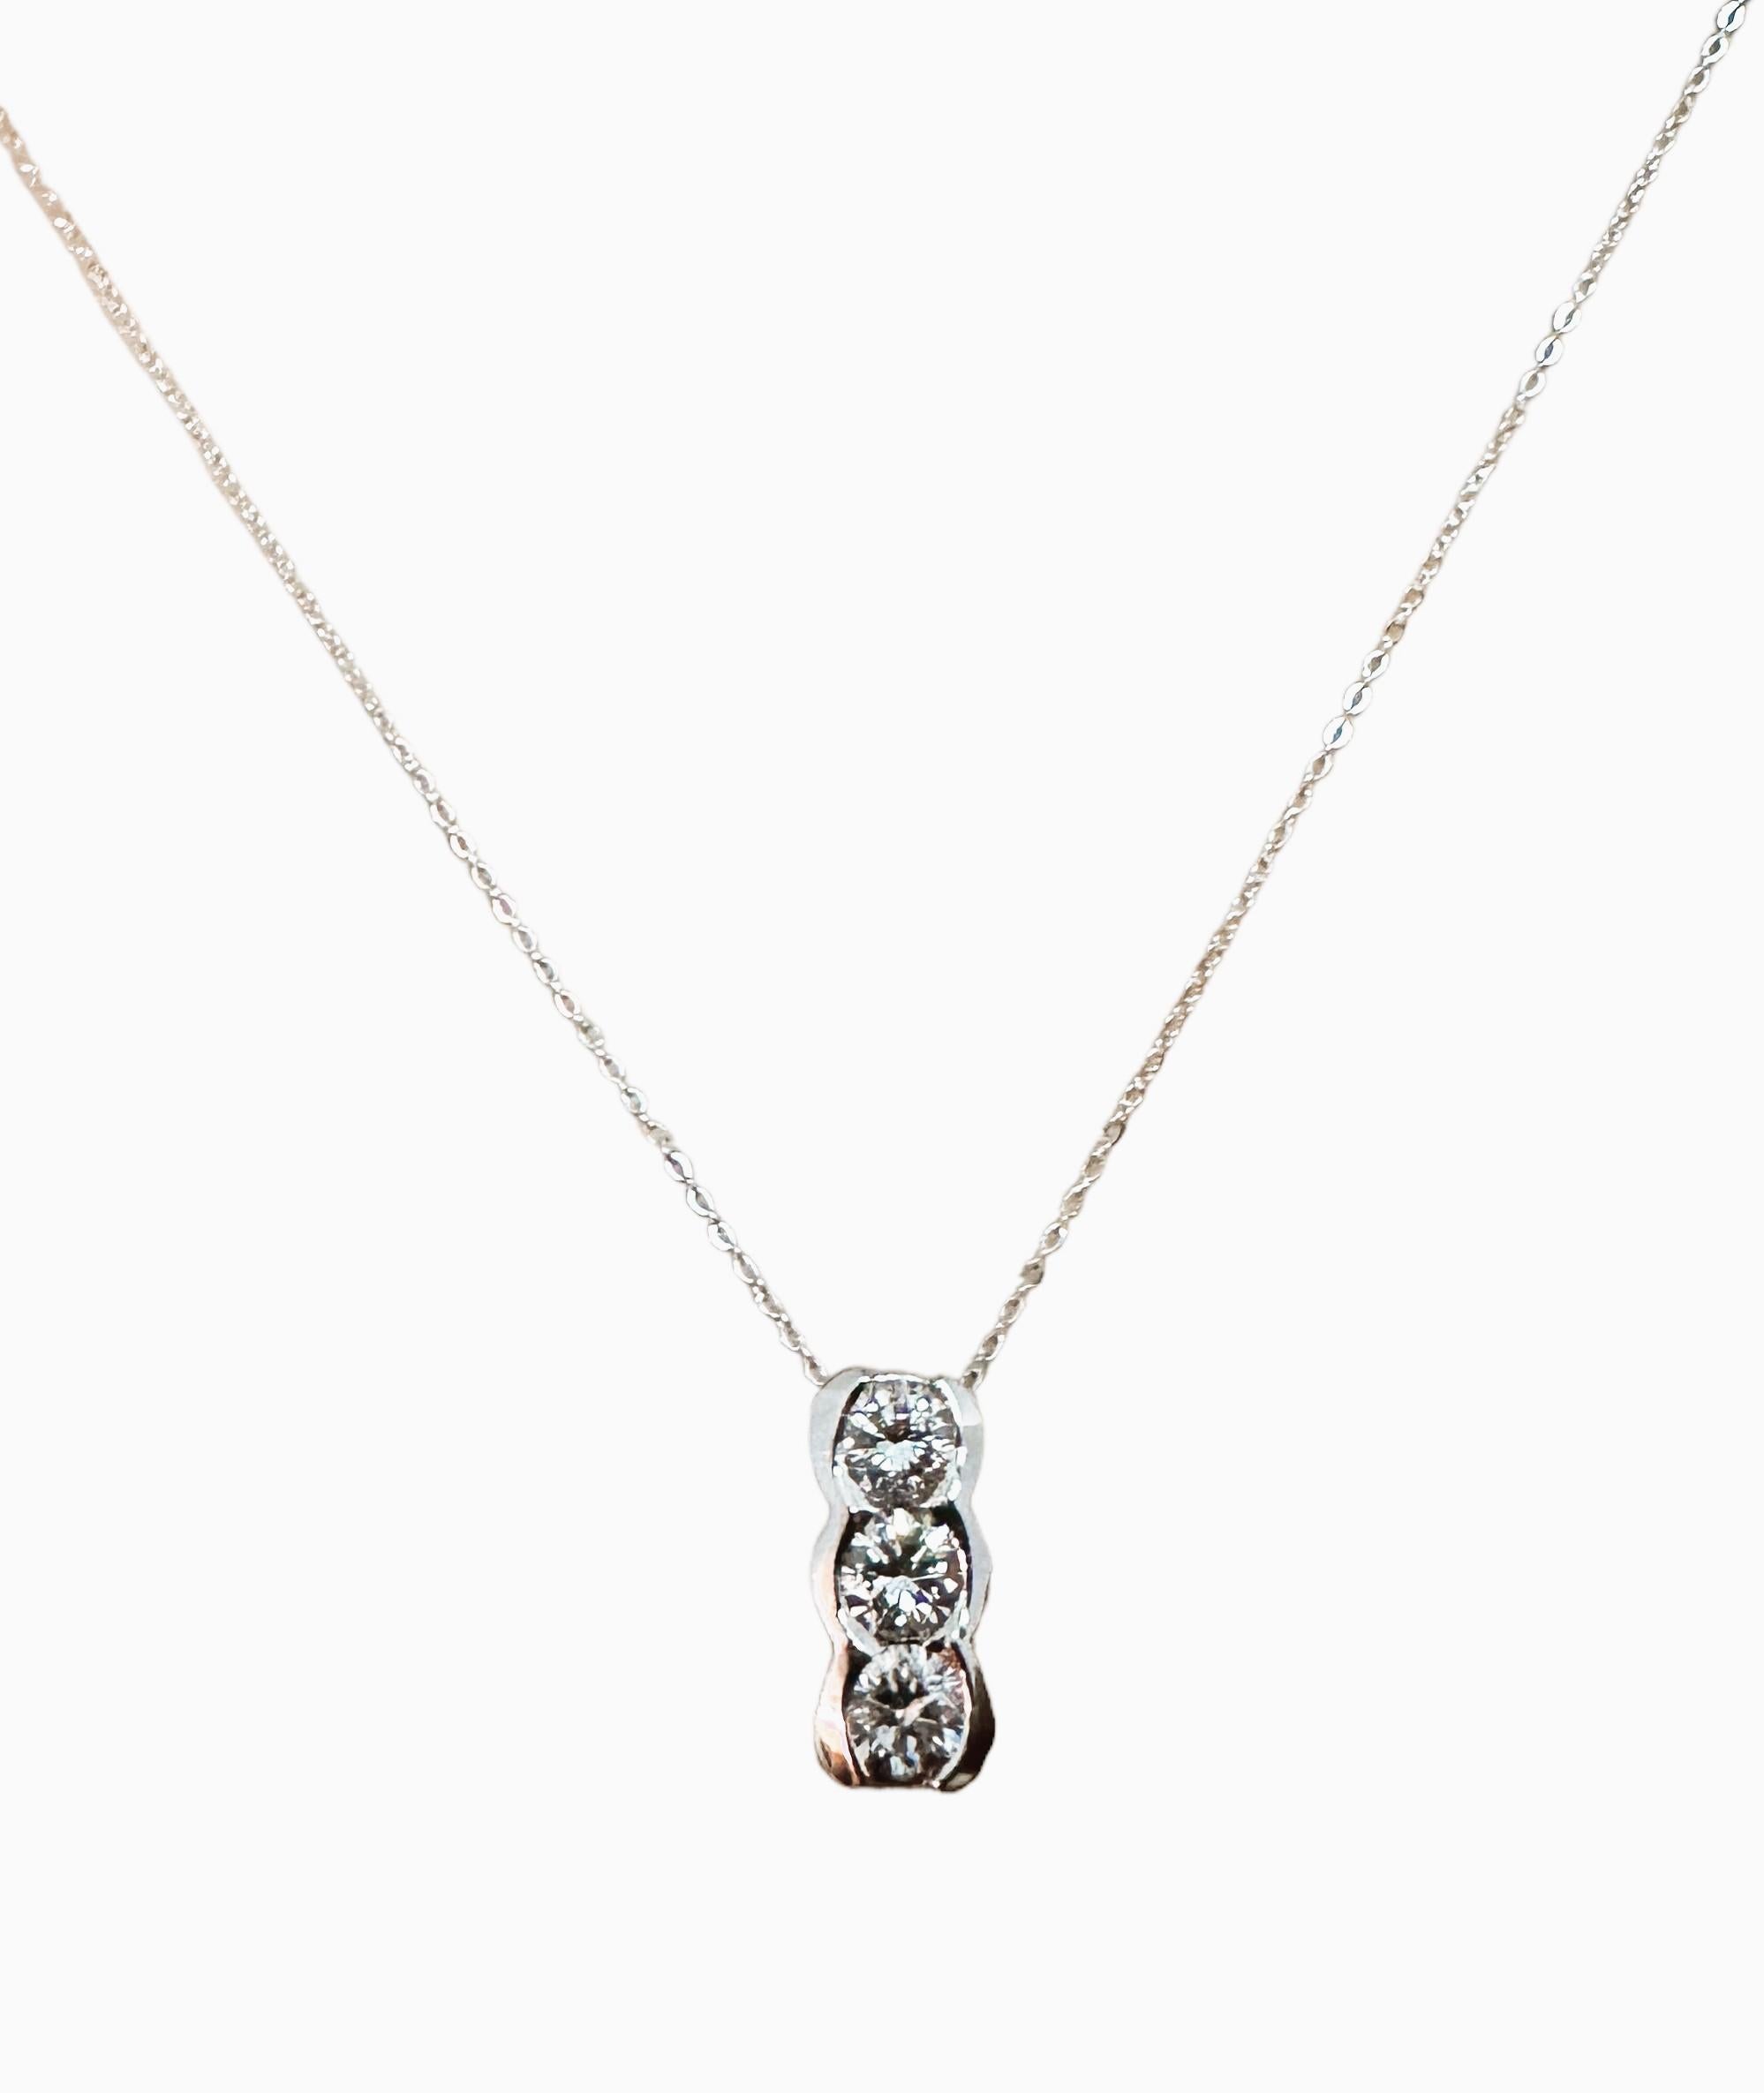 Taille brillant The Modernity Italian 14k White Gold 3-Stone Diamond .5 ct Necklace with Appraisal (Collier en or blanc 14k à 3 pierres et diamants de 0,5 ct) en vente